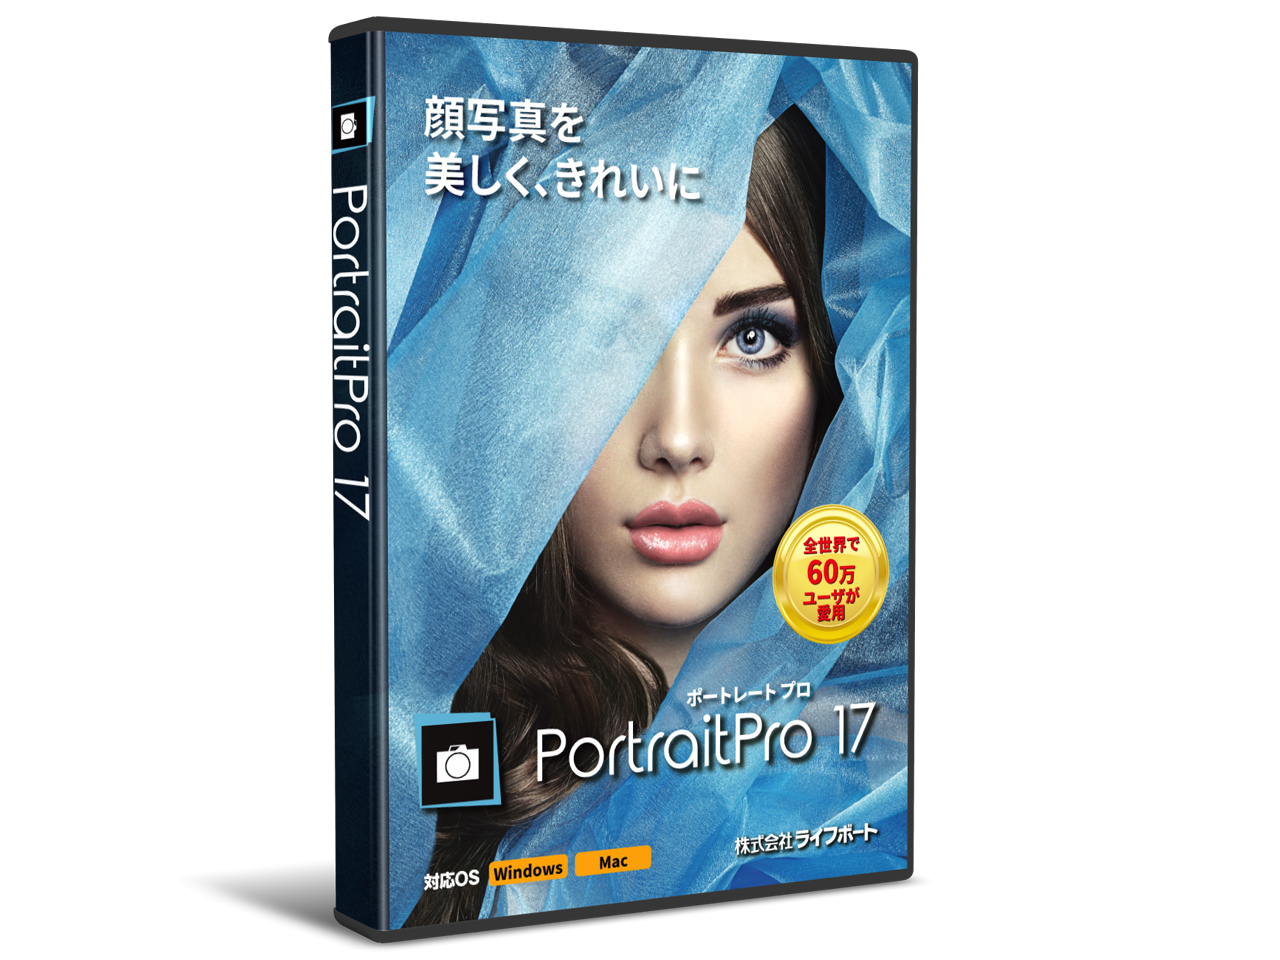 価格.com - PortraitPro 17 の製品画像